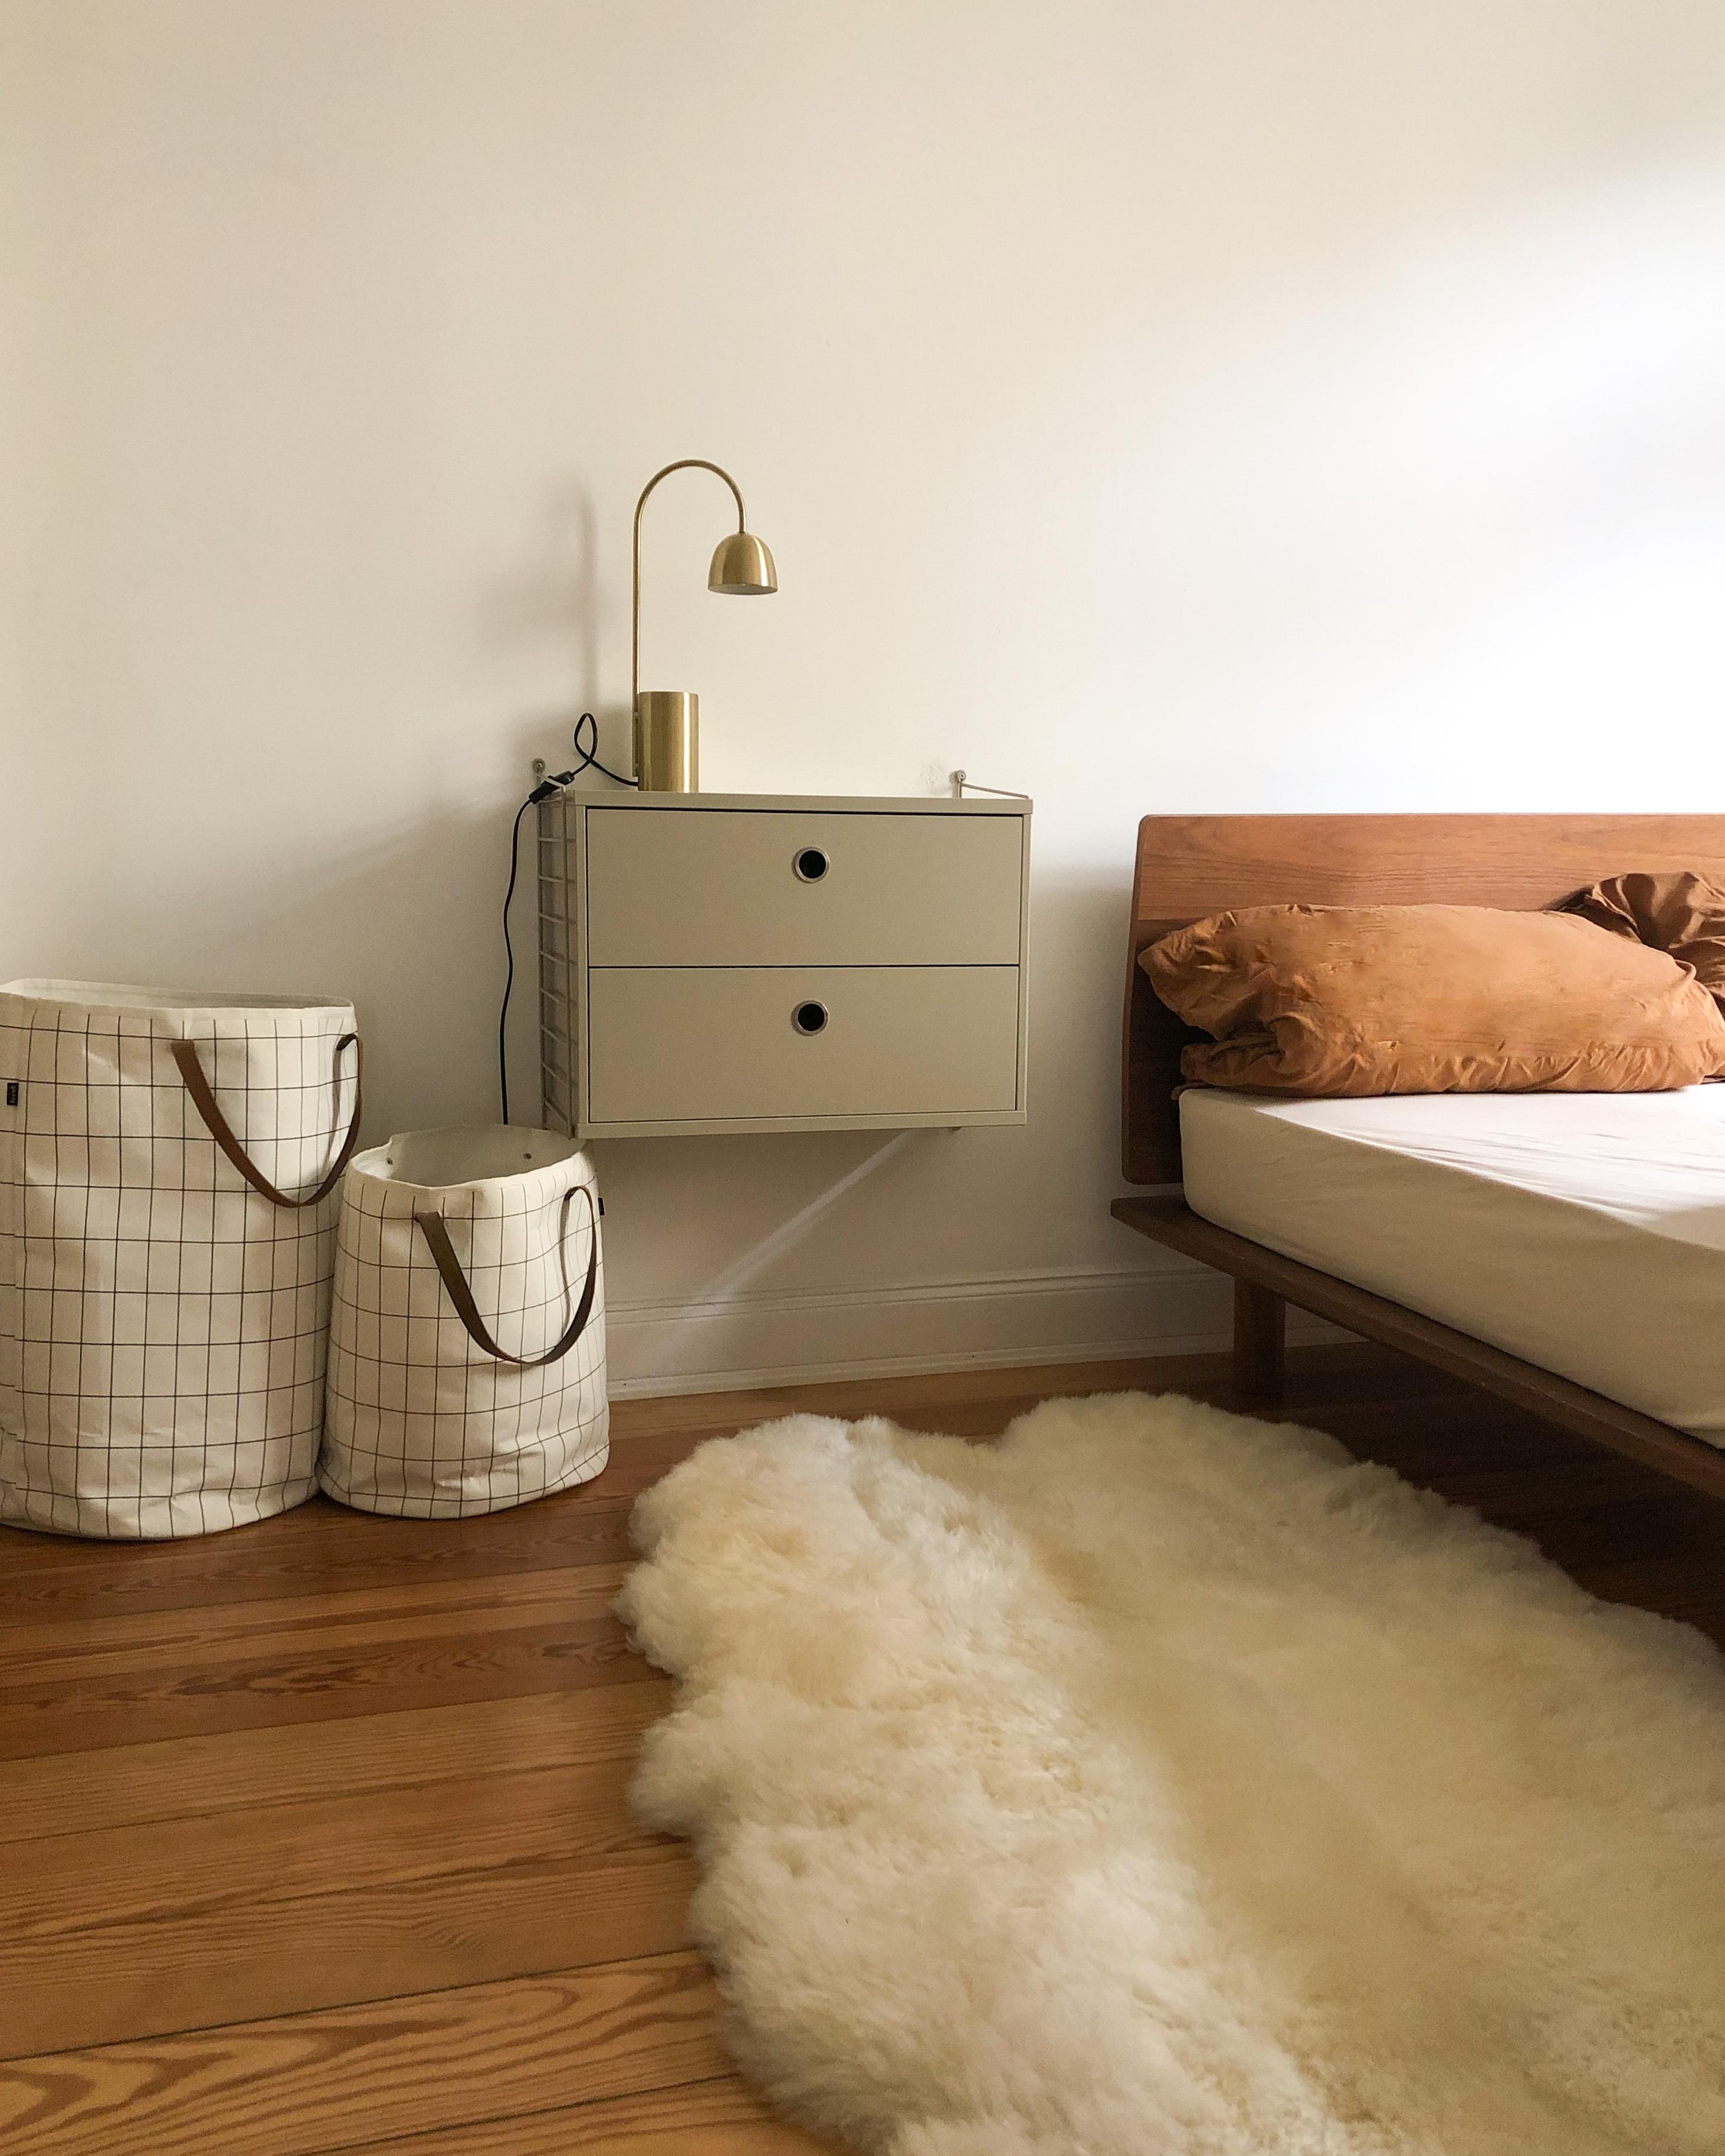 #schlafzimmer #hygge #minimalistisch #stringfurniture #cozy #bett